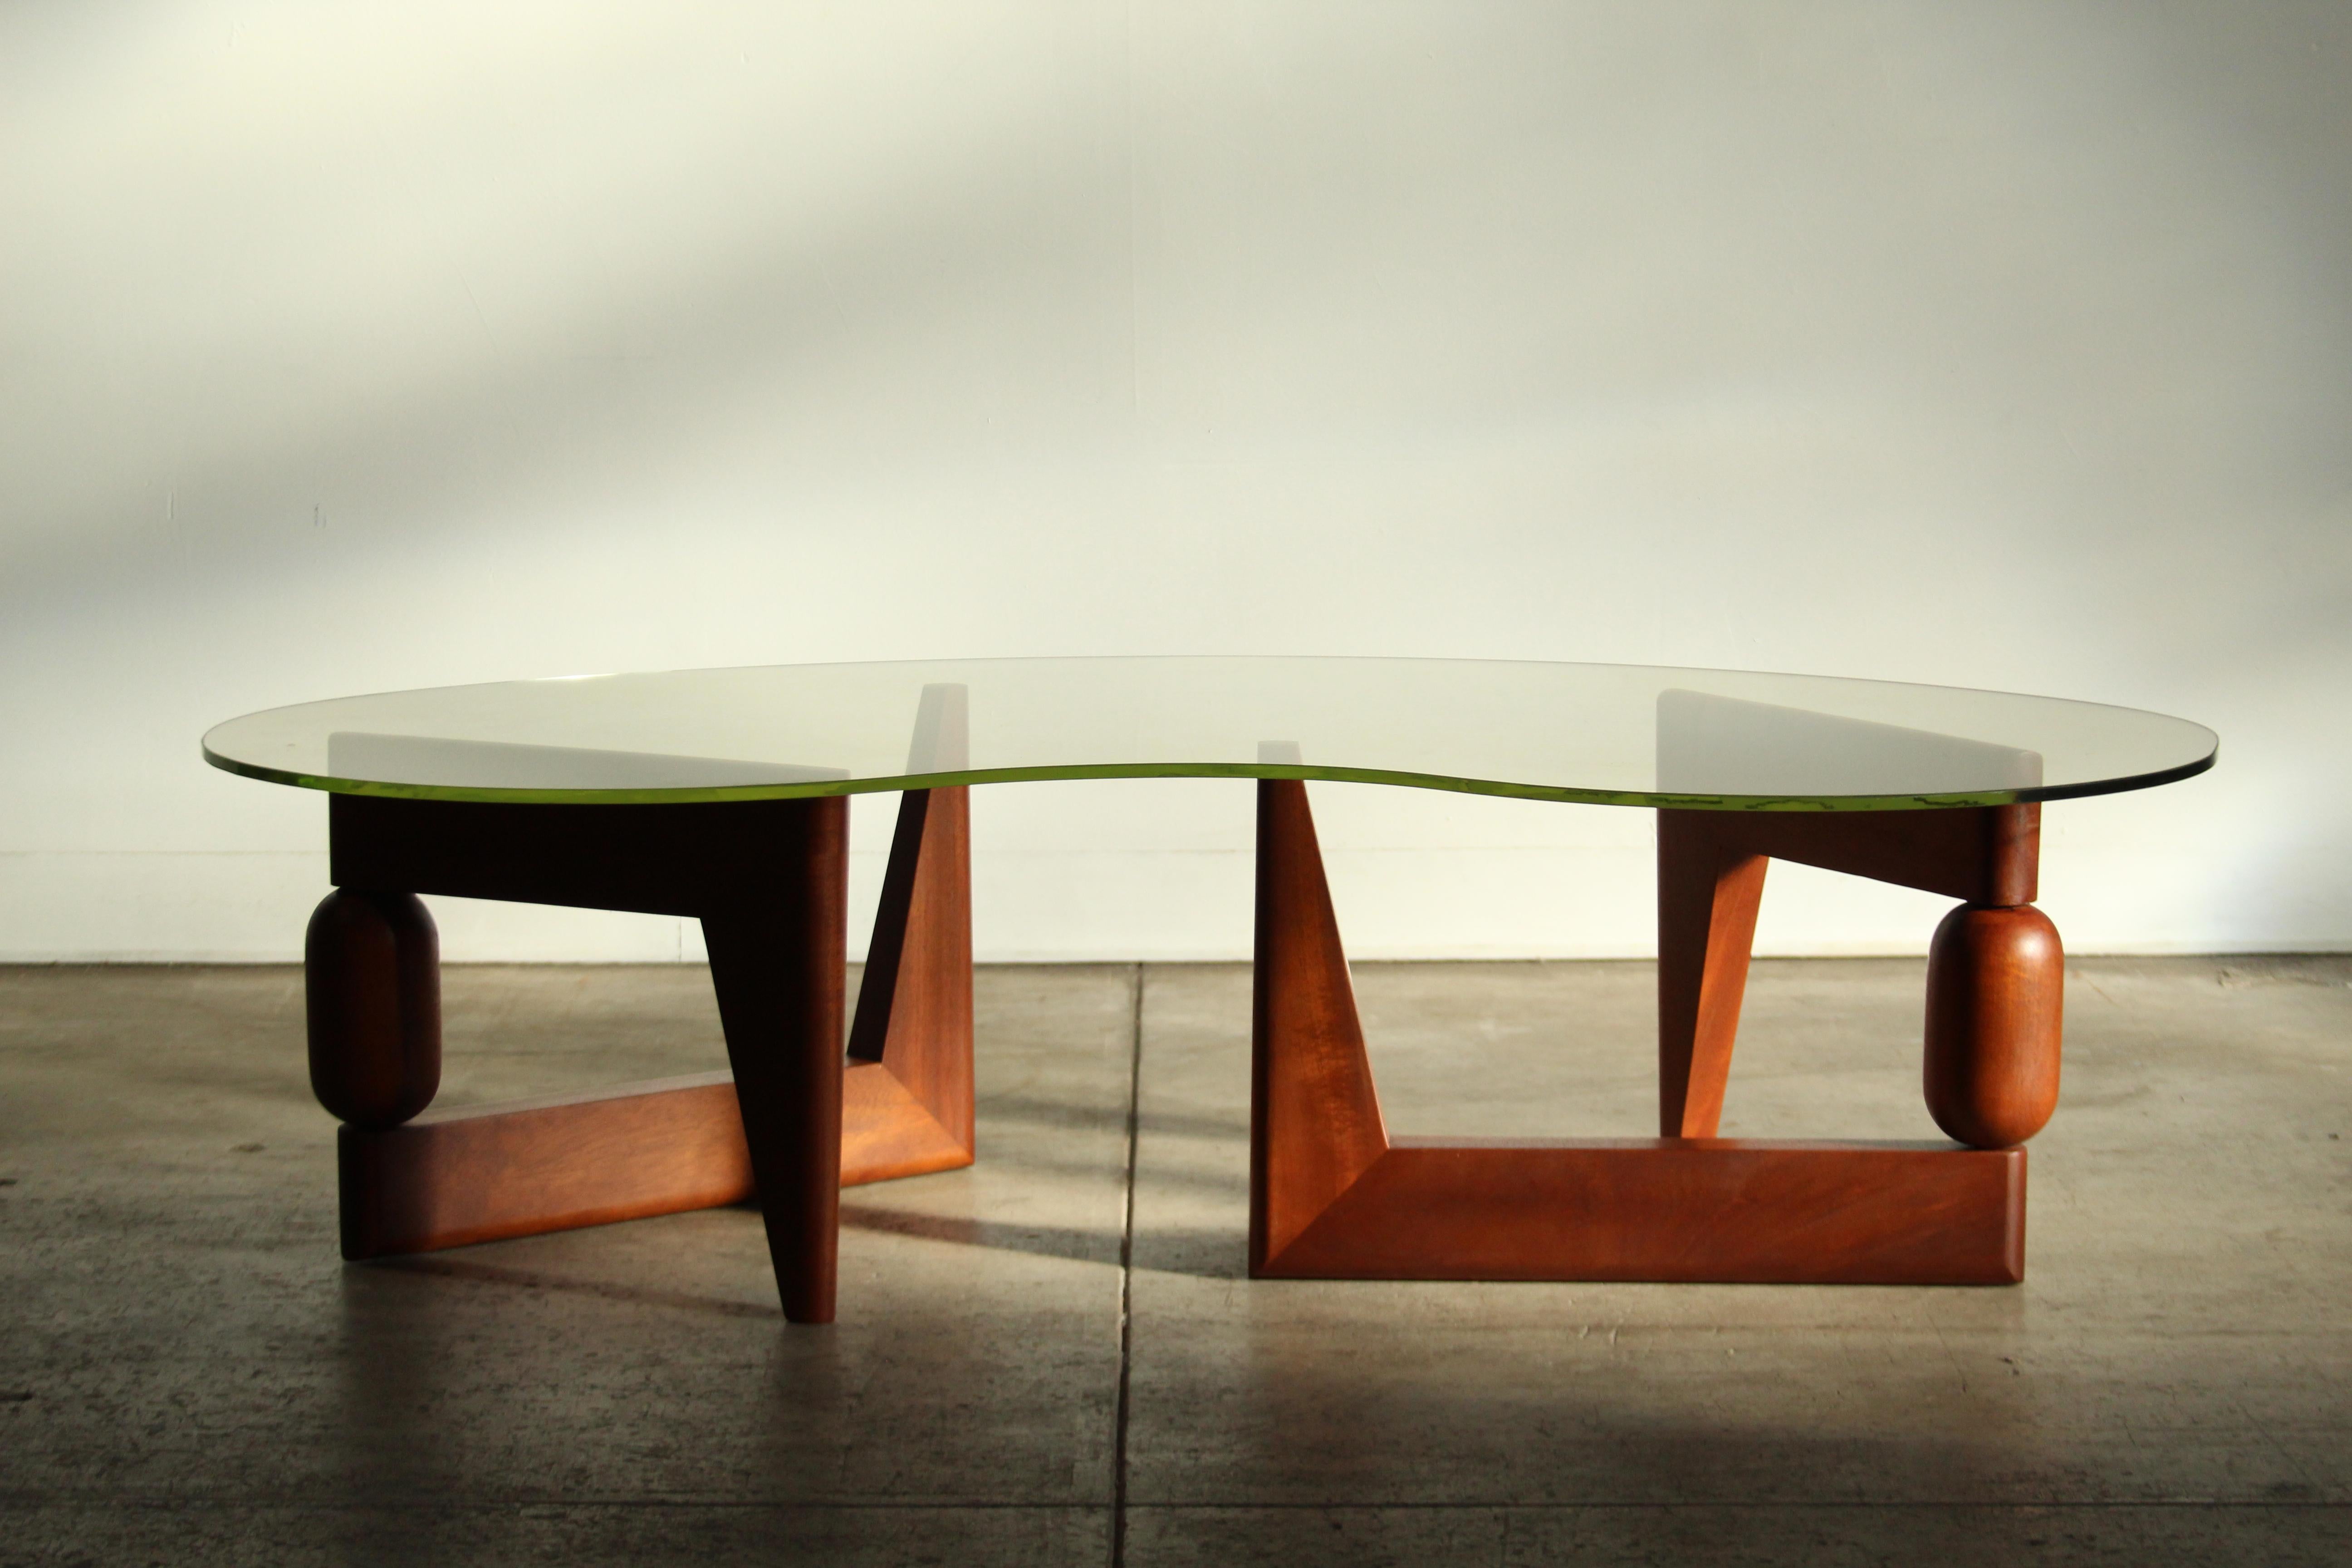 Une étonnante table basse sculpturale de forme libre avec des bases articulées en acajou massif et un verre original vert uranium. Probablement fabriquée dans les années 1970 par un designer inconnu. Les bases ont été restaurées avec amour et sont